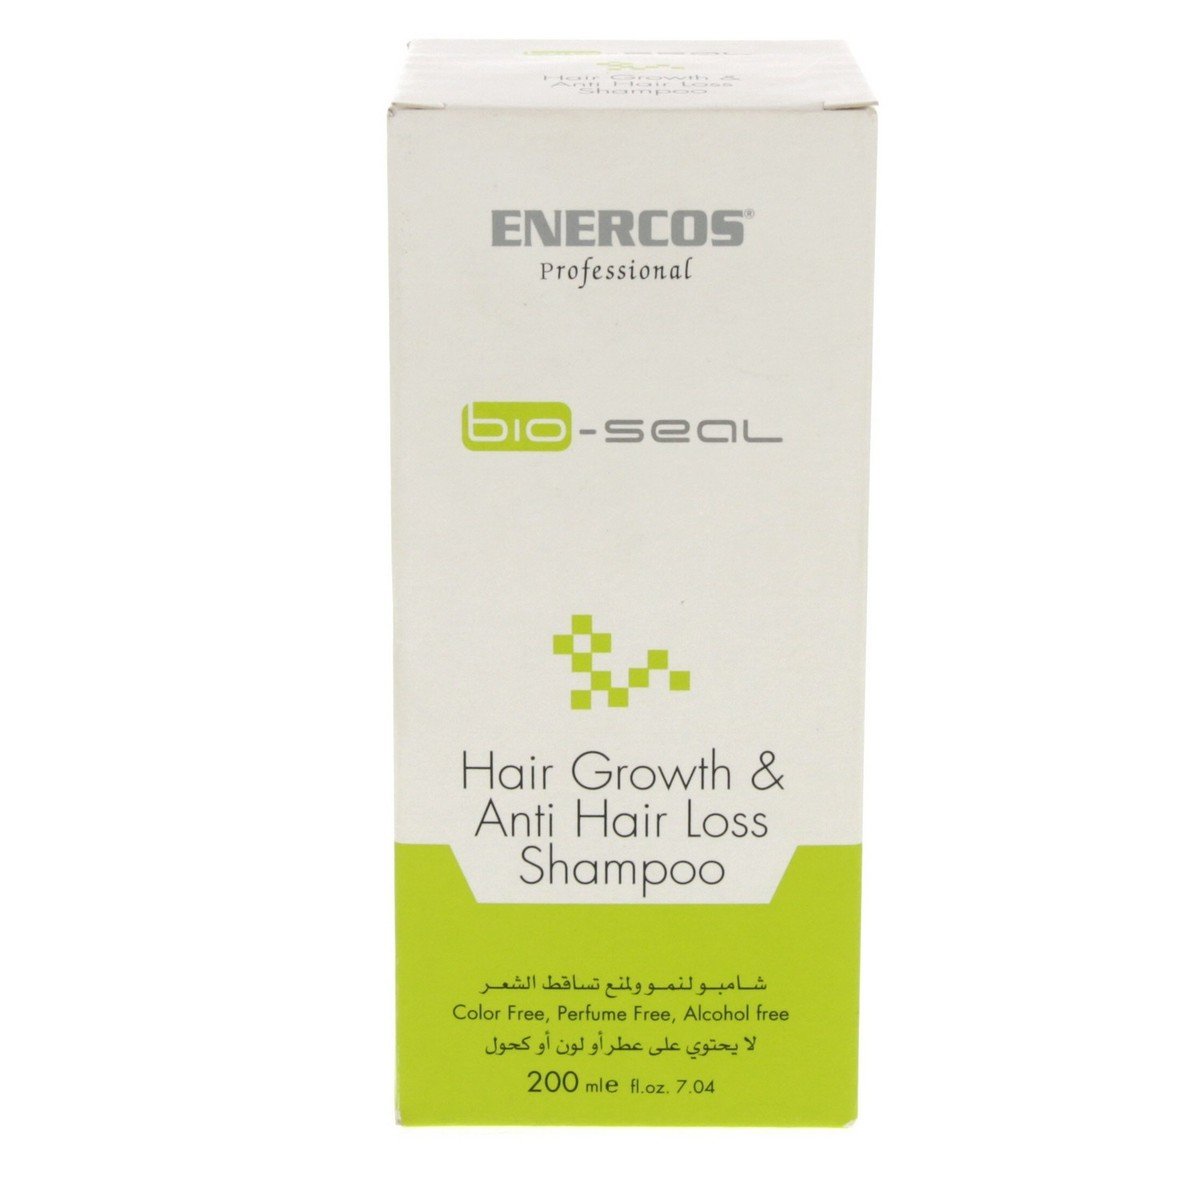 Enercos Shampoo Hair Growth & Anti Hair Loss 200 ml